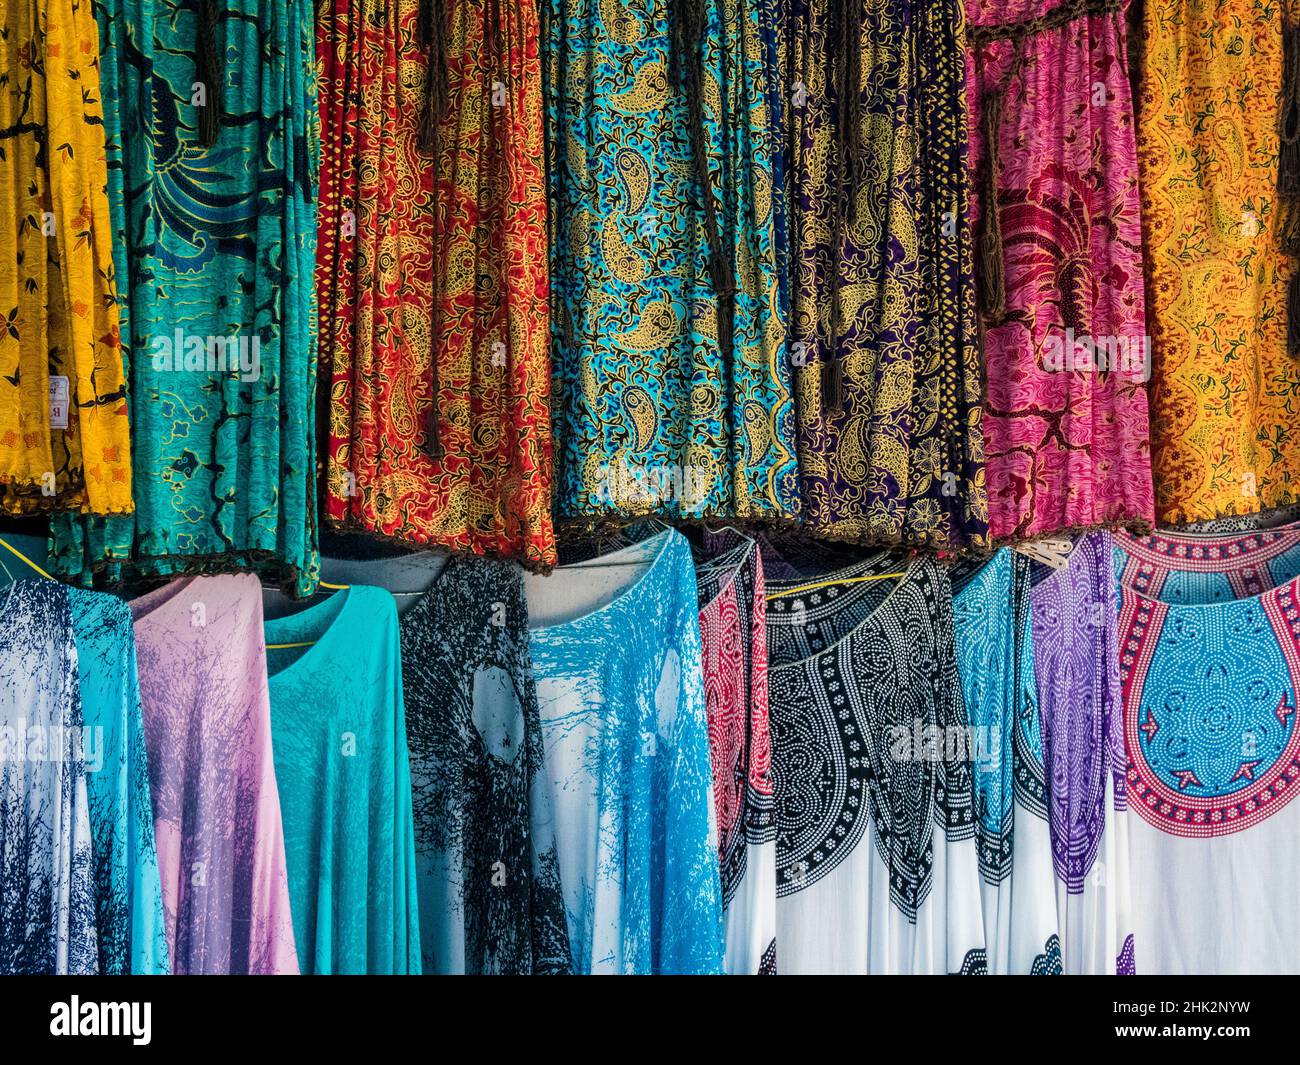 Indonesien, Bali, Ubud. Eine Auswahl an balinesischen Stoffen und  farbenfrohen Sarongs Stockfotografie - Alamy